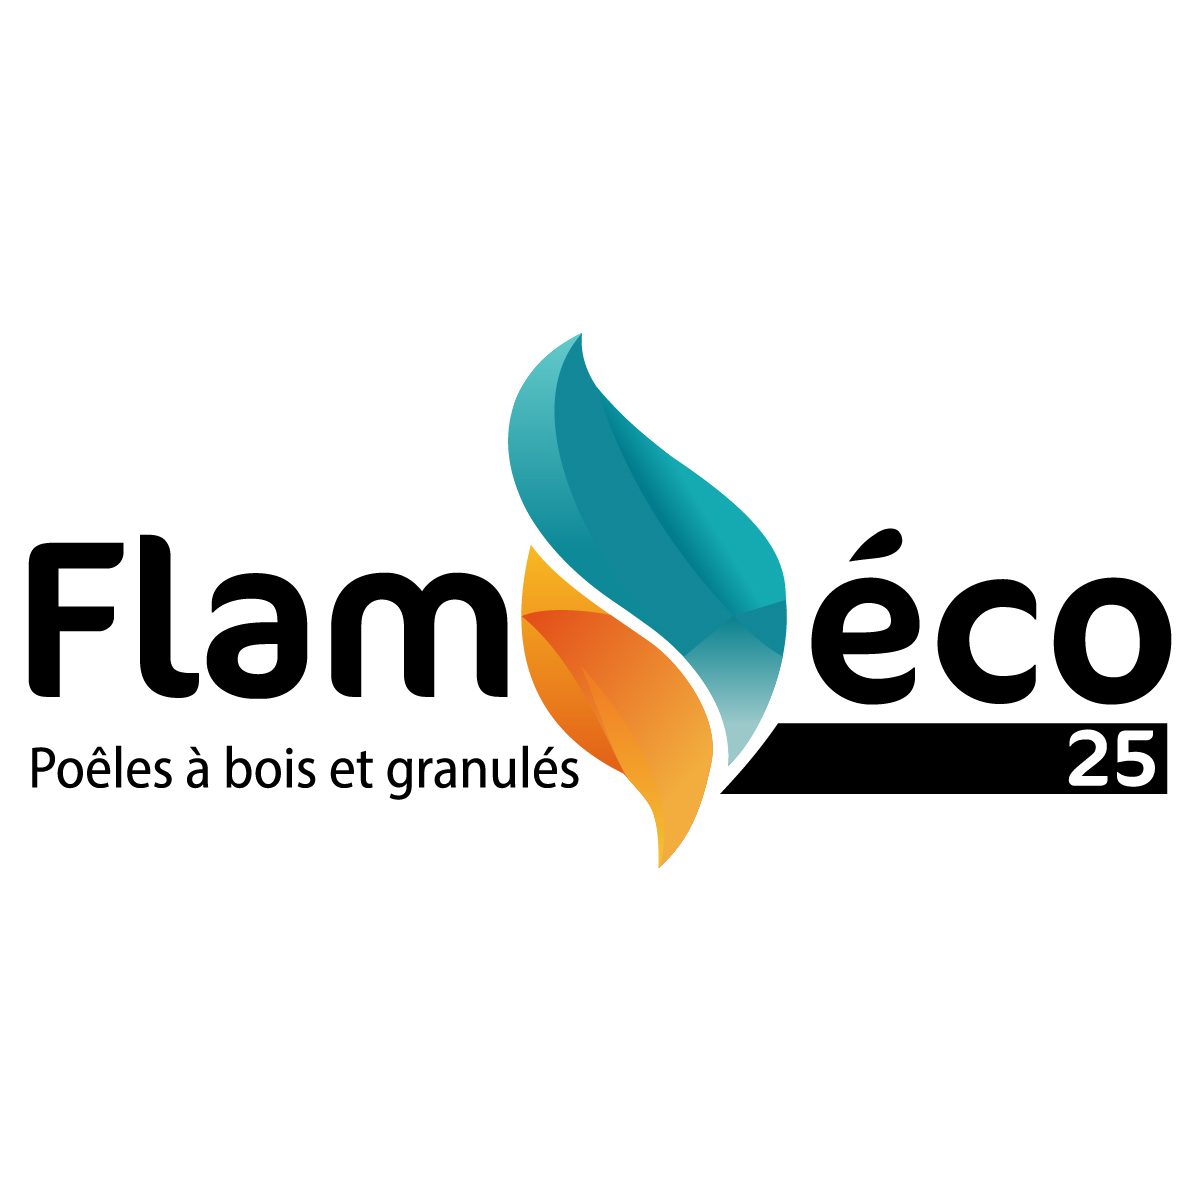 (c) Flameco25.com